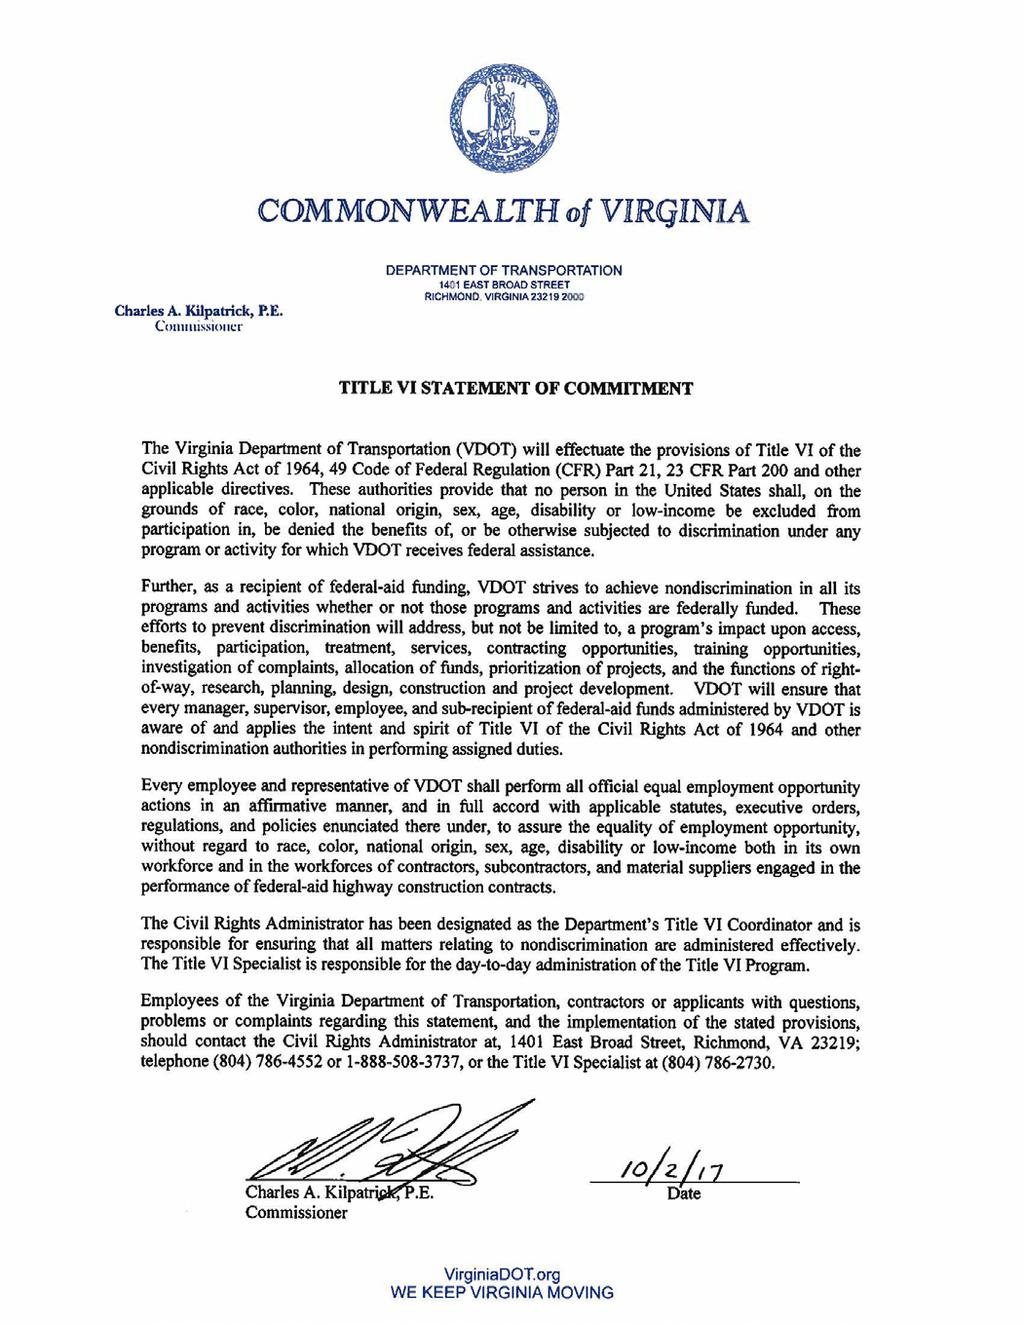 Virginia Department of